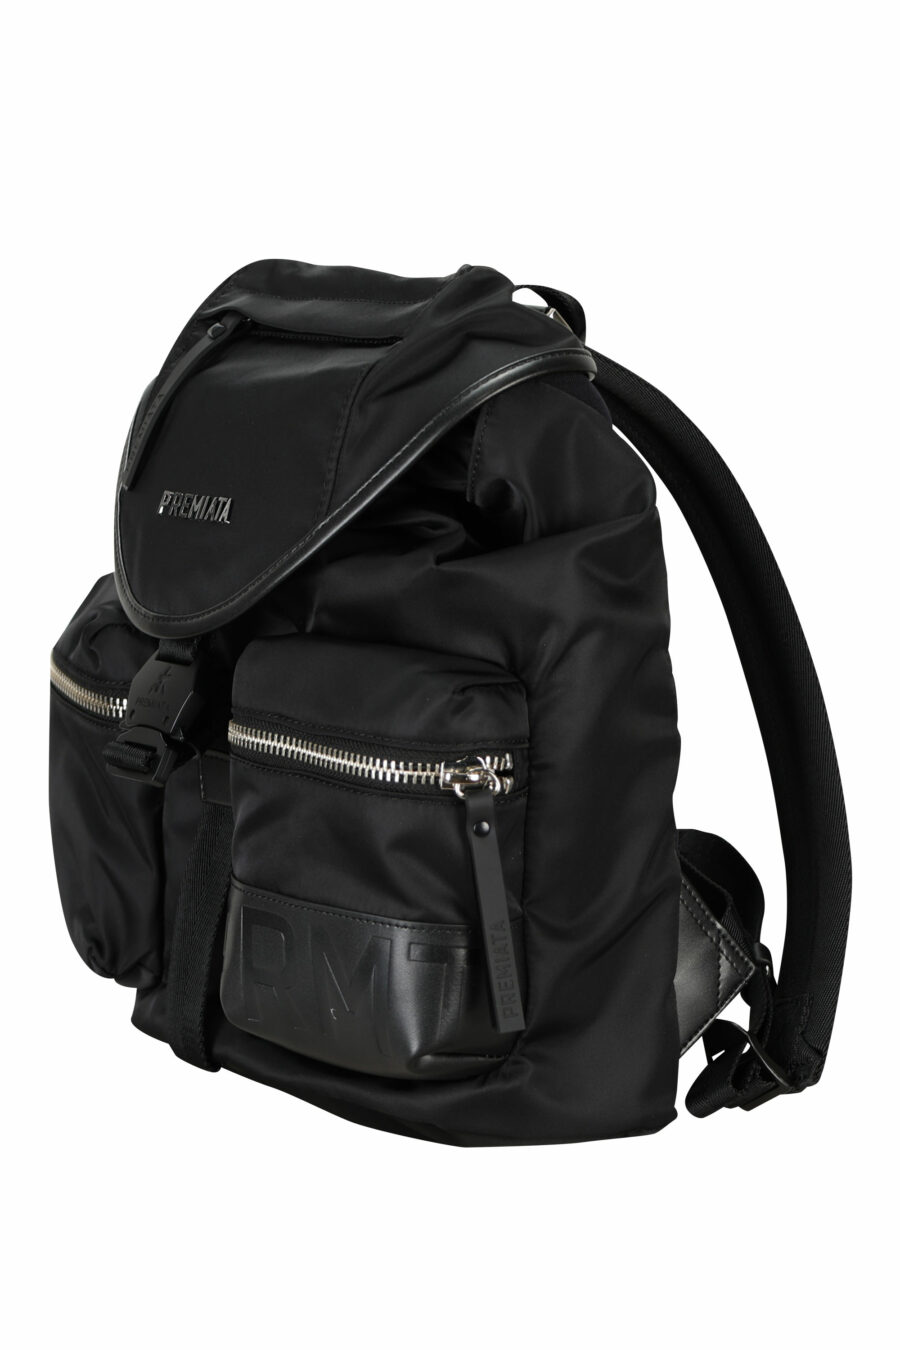 Black backpack LYN 2100 - 8058325910155 1